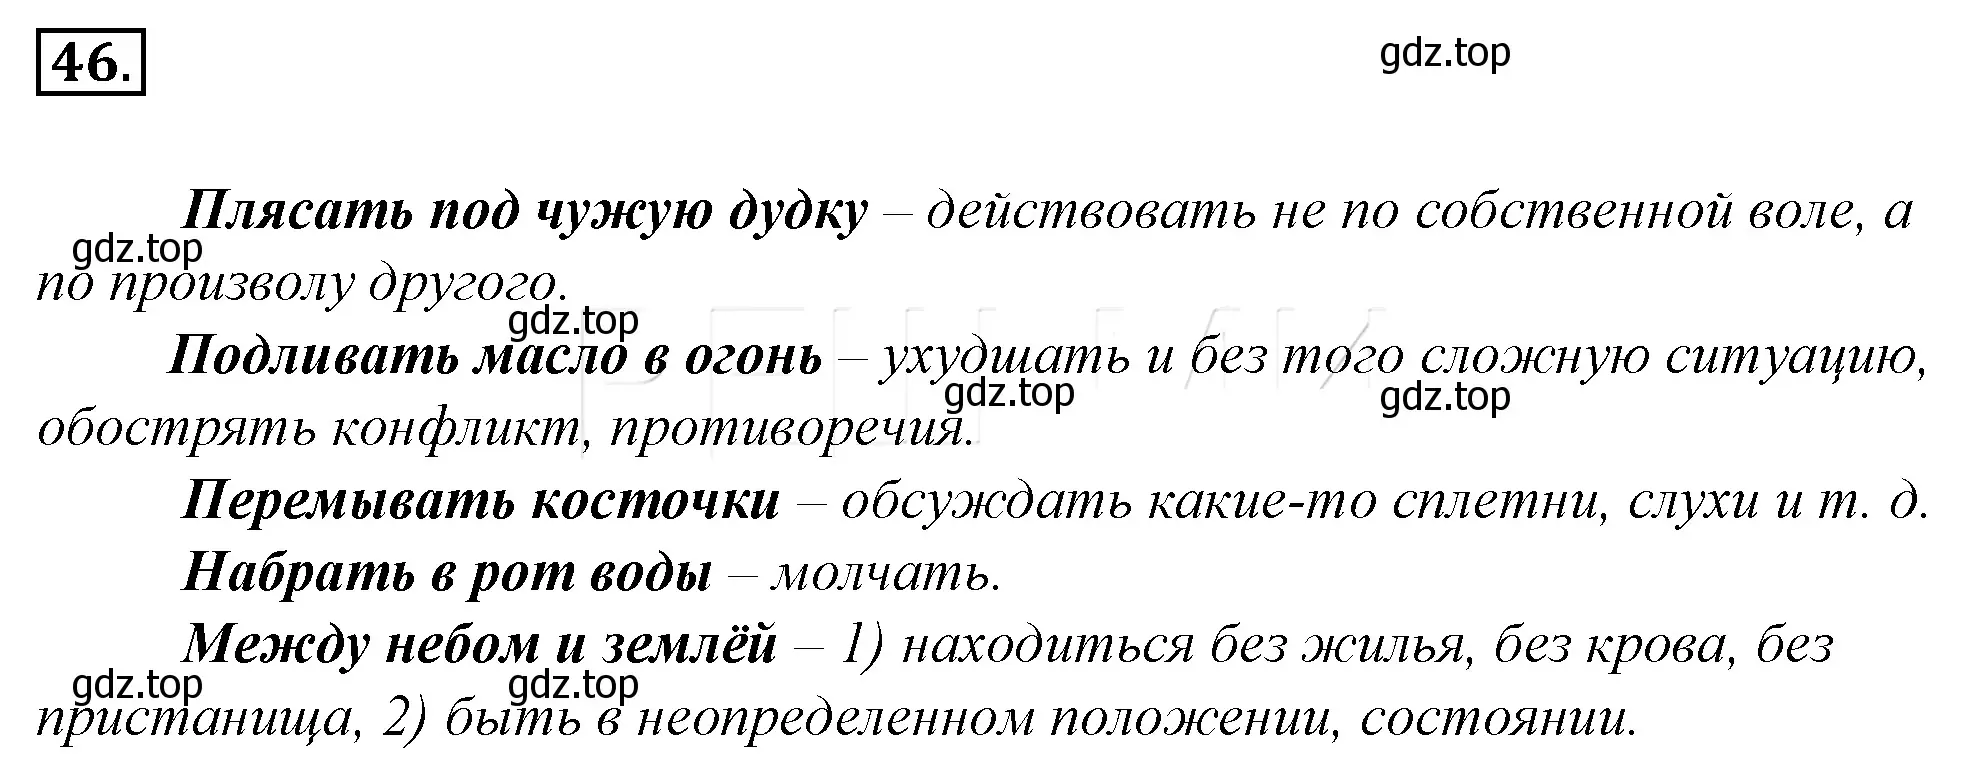 Решение 4. номер 67 (страница 66) гдз по русскому языку 10-11 класс Гольцова, Шамшин, учебник 1 часть